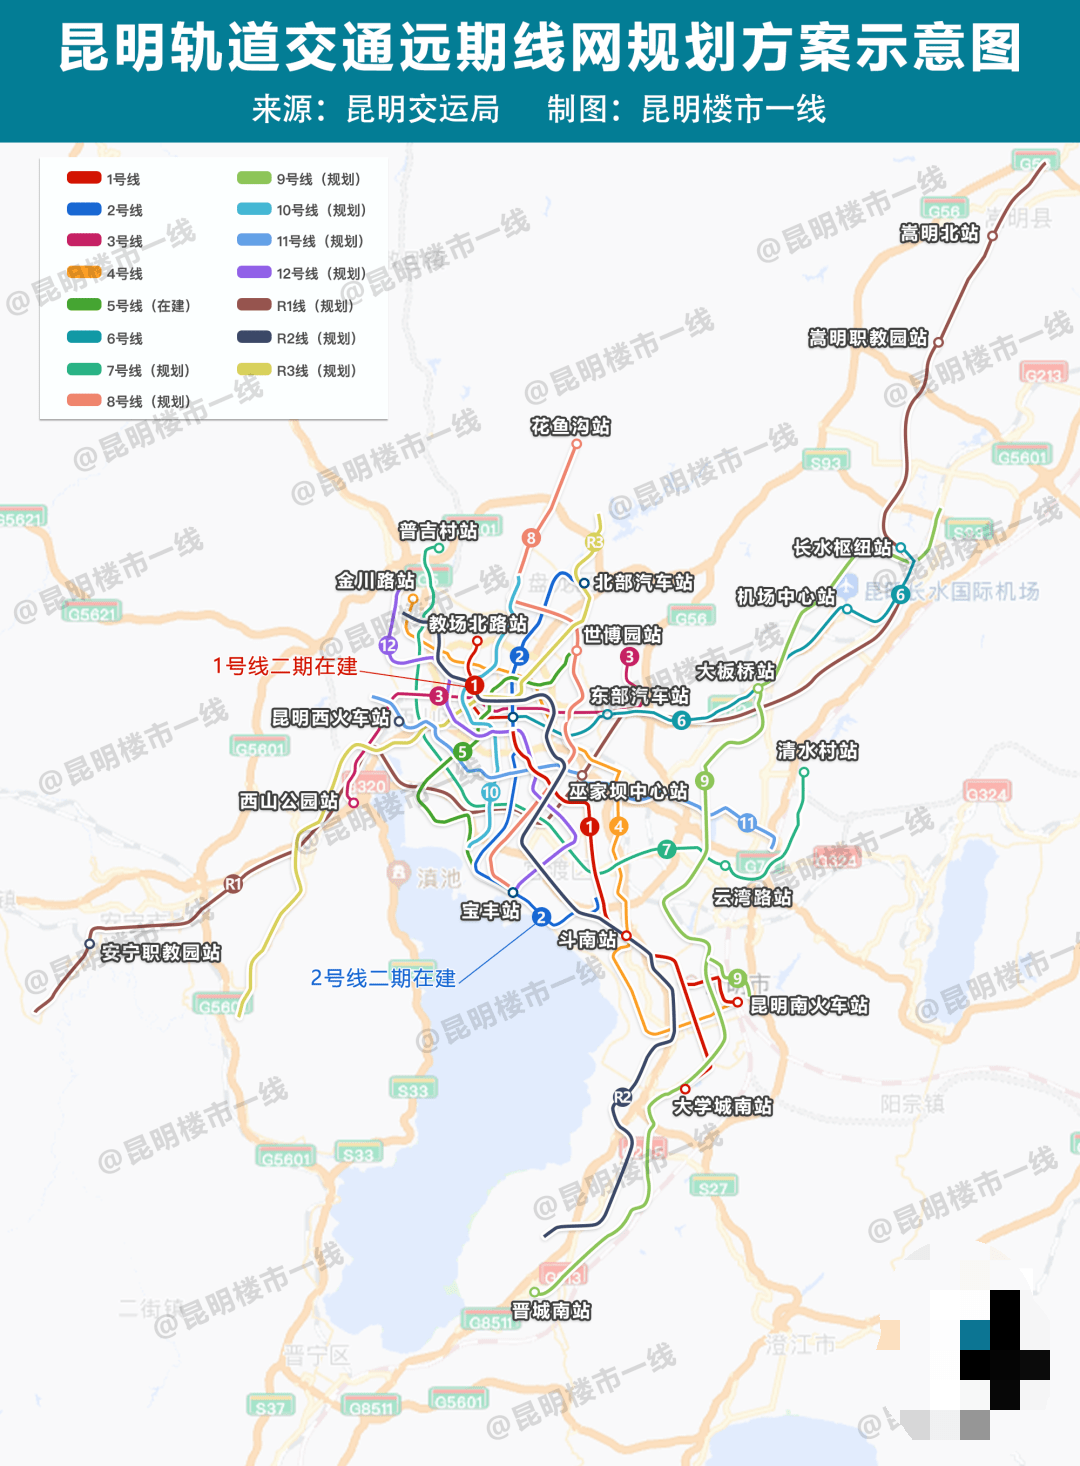 截止目前,昆明已开通地铁线路有5条,包括1,2号线首期(合并为1条线路